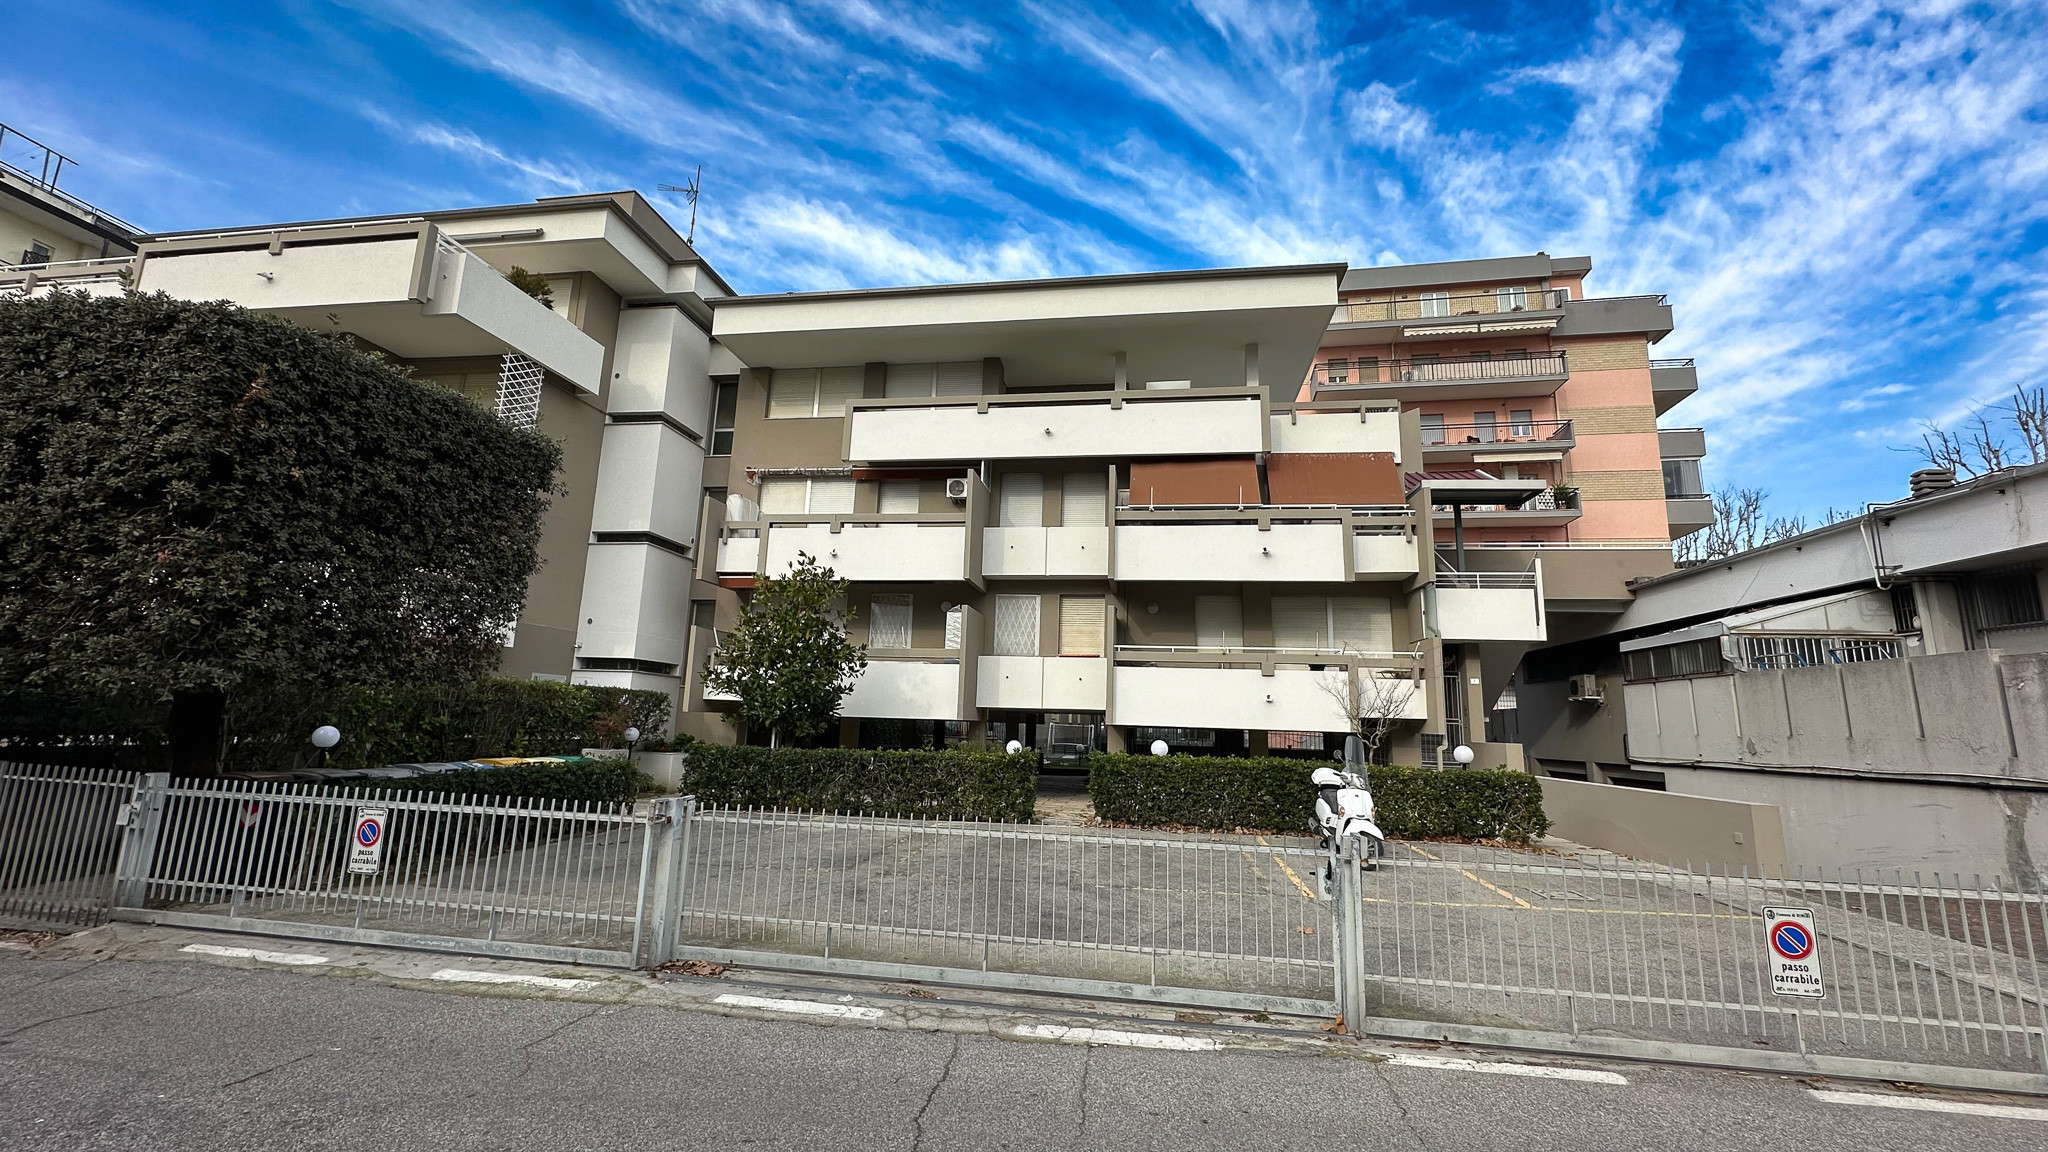 Rimini - Apartment